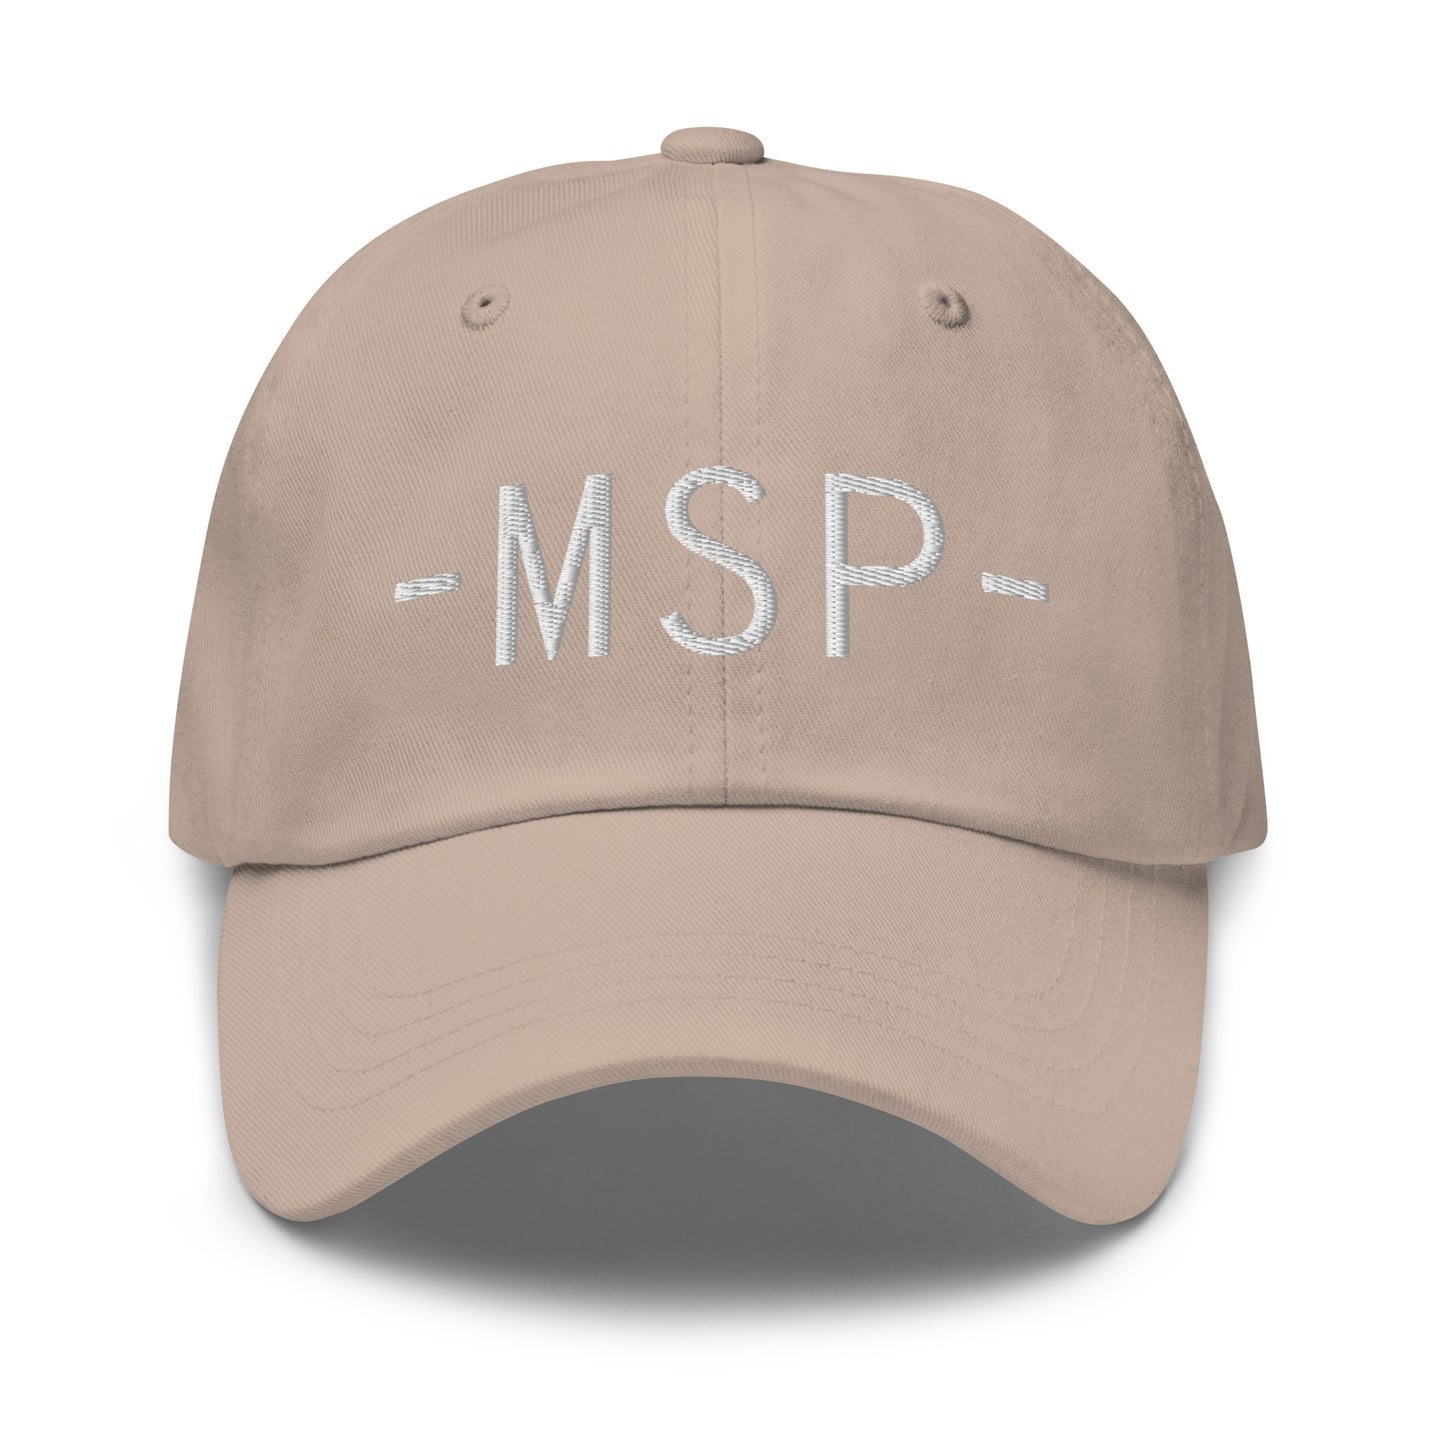 Souvenir Baseball Cap - White • MSP Minneapolis • YHM Designs - Image 23